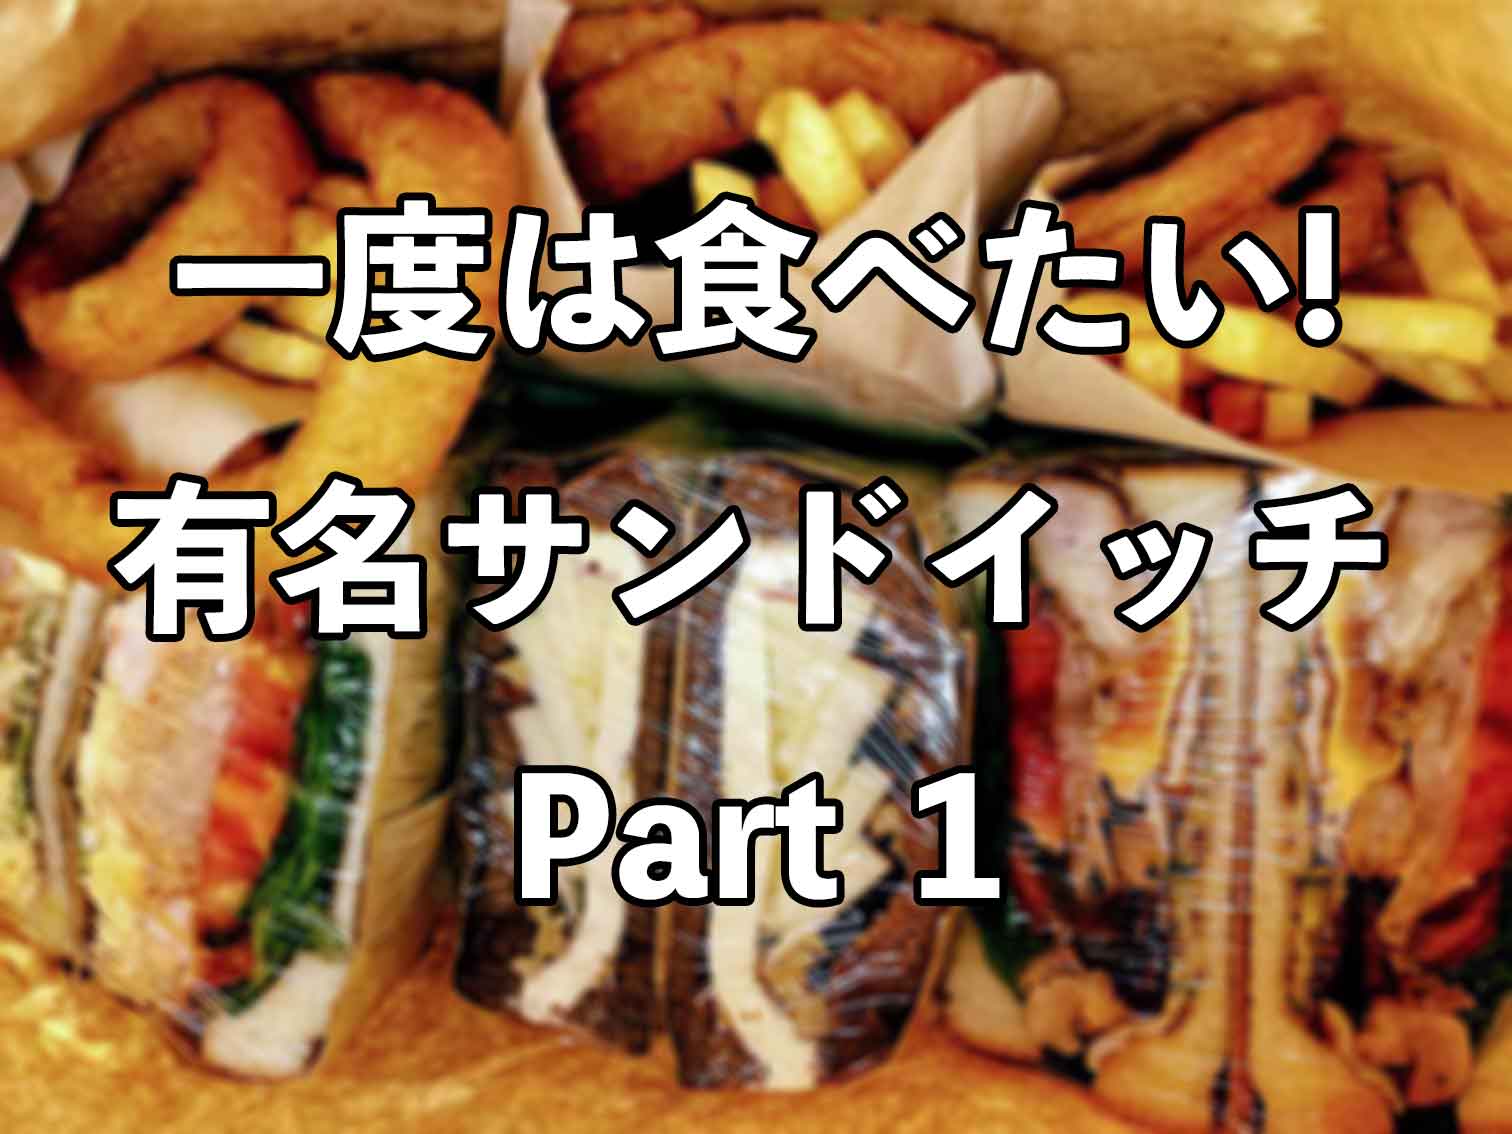 一度は食べたい 関西サンドイッチの名店 Part1